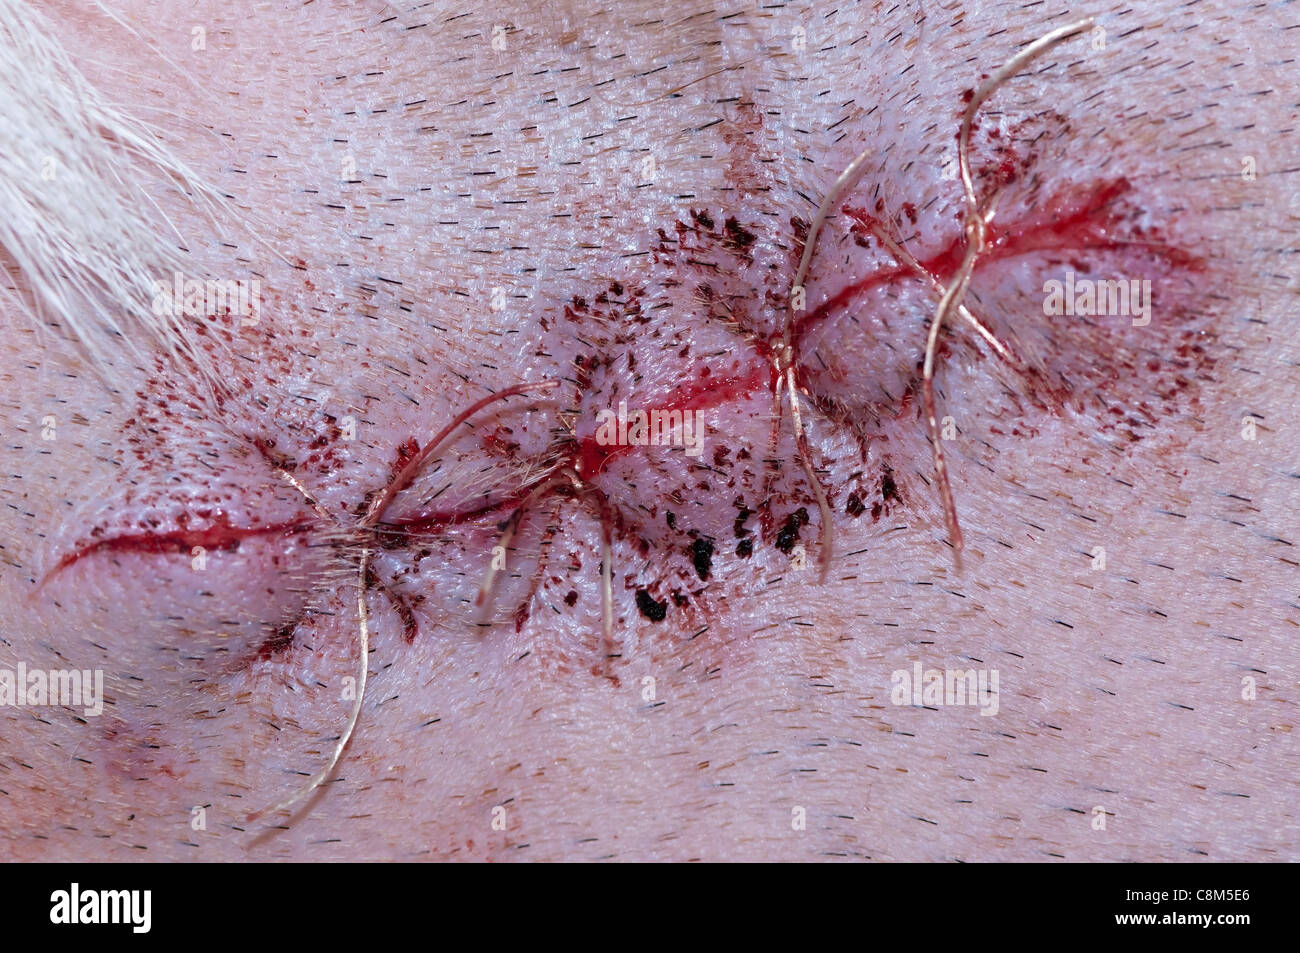 Nuevos puntos de sutura de una operación quirúrgica en un perro. Foto de stock